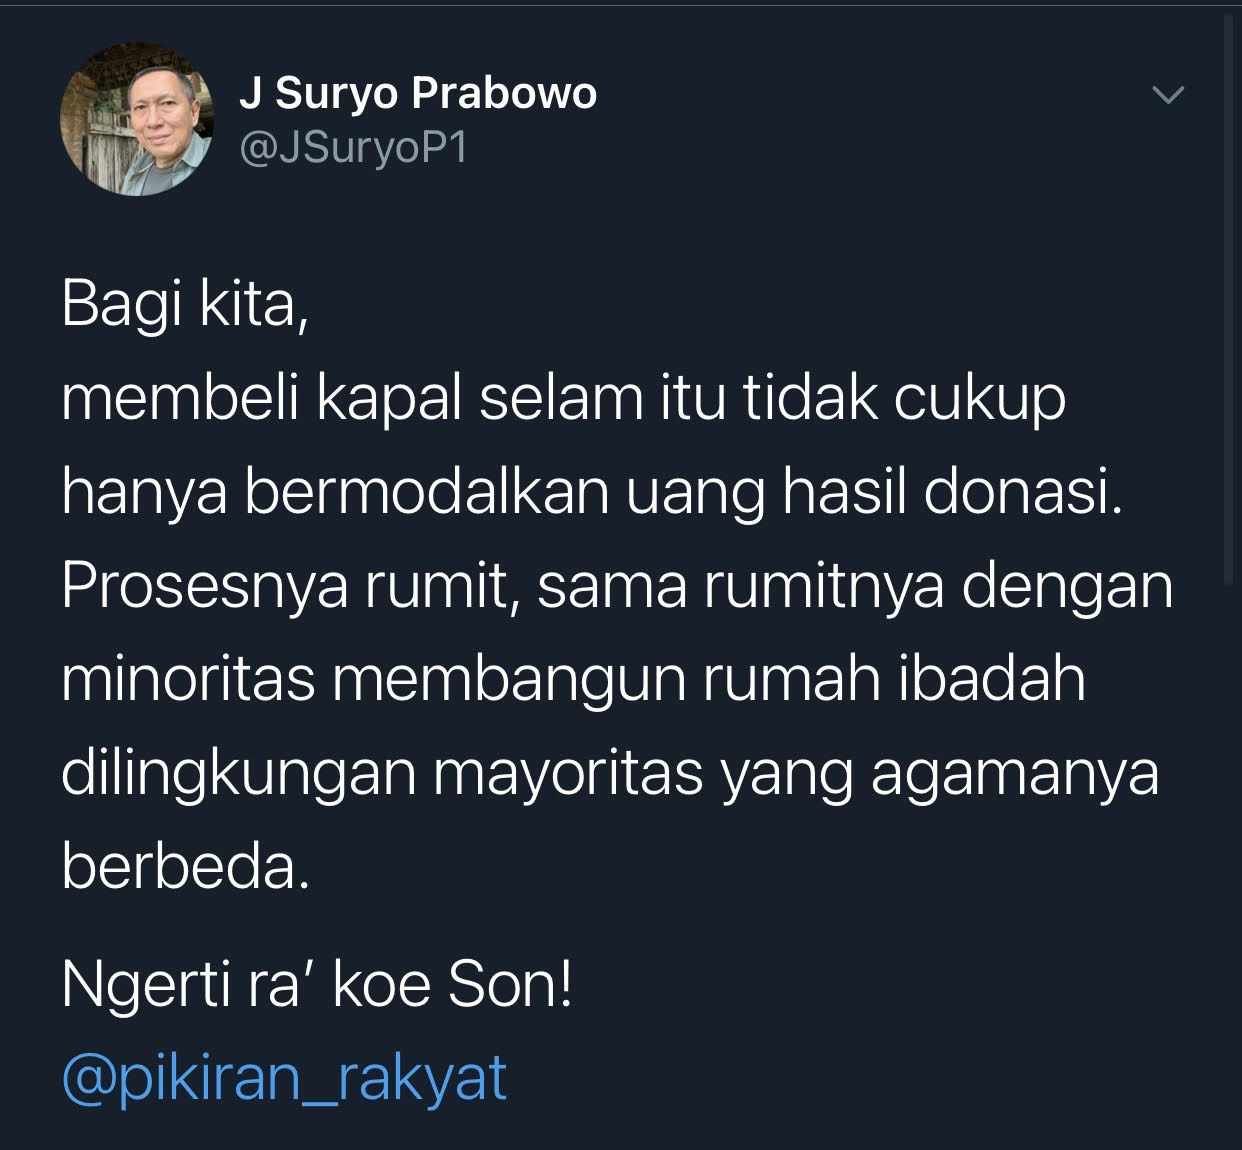 Cuitan JS Prabowo soal uang donasi untuk kapal selam.